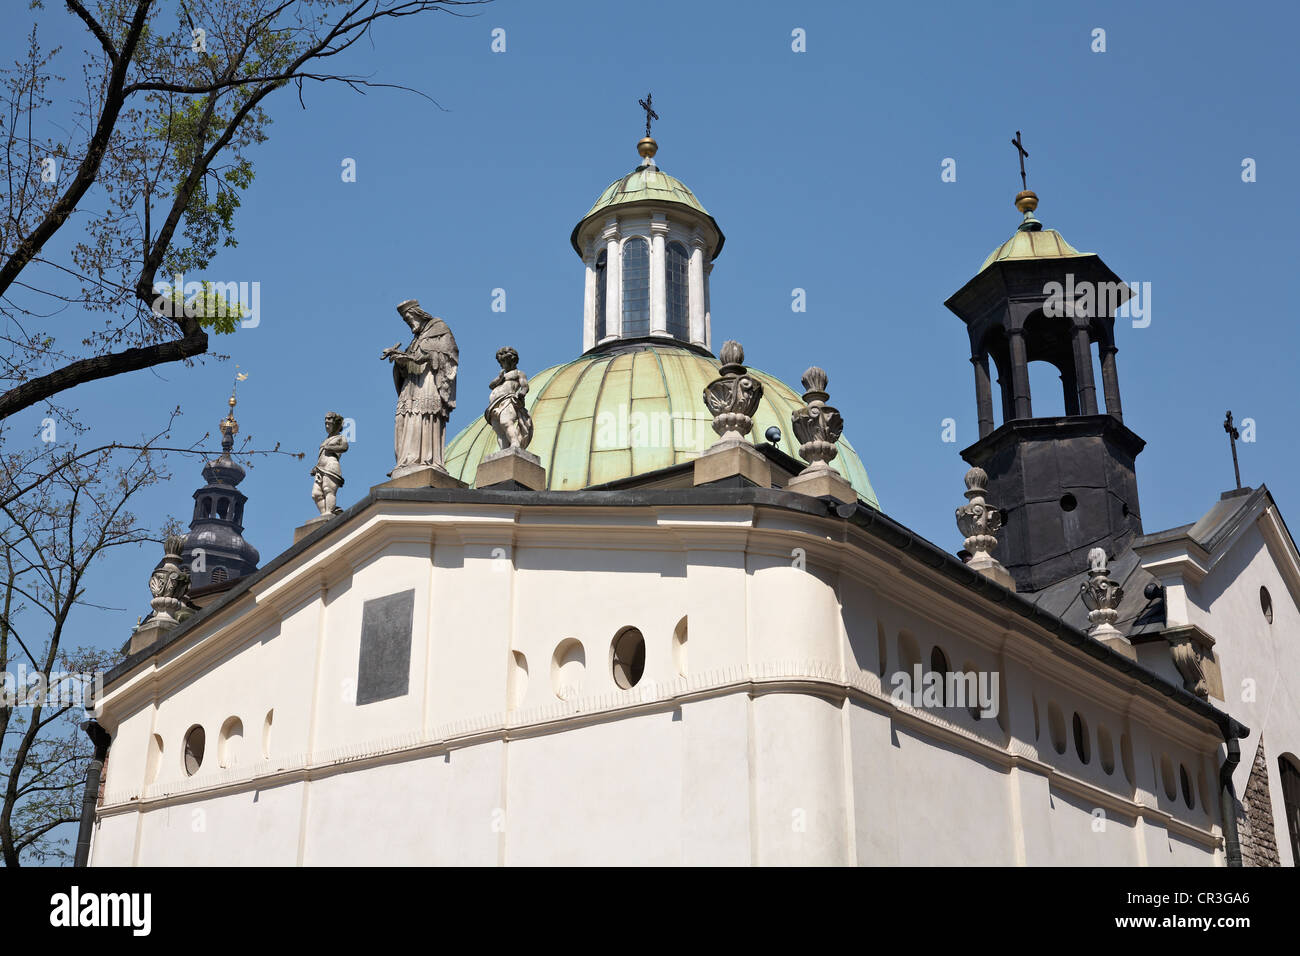 Europa oriental, Polonia, Cracovia, la Iglesia de San Adalberto de Rynek Glowny Plaza Principal Foto de stock